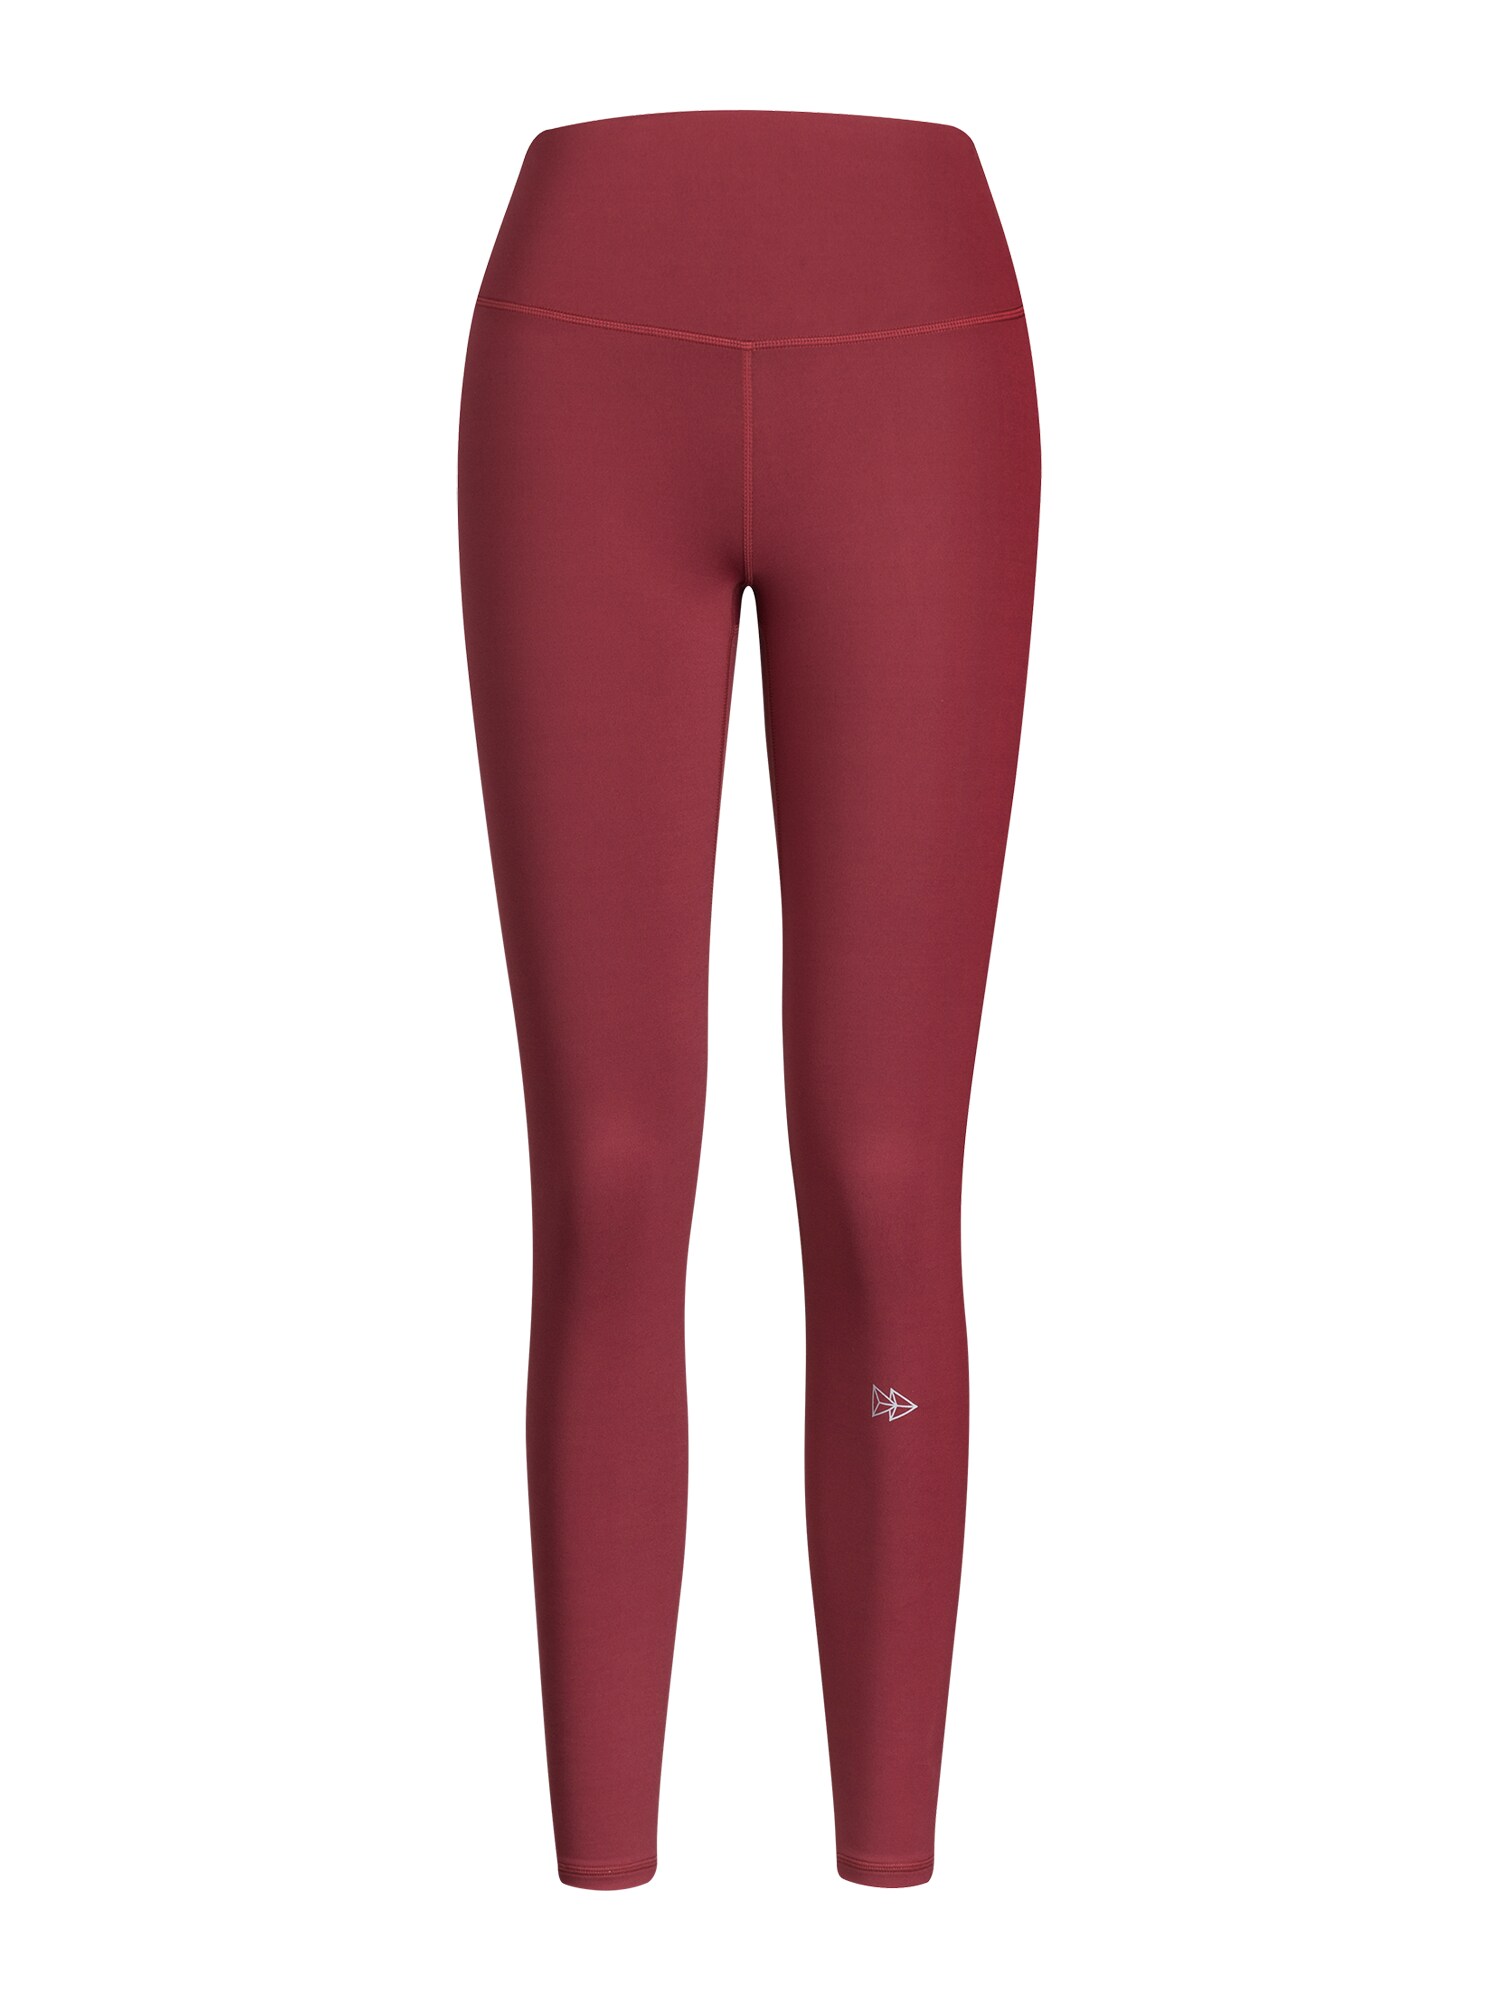 Yvette Sports Sportinės kelnės 'Charly' vyno raudona spalva / balta